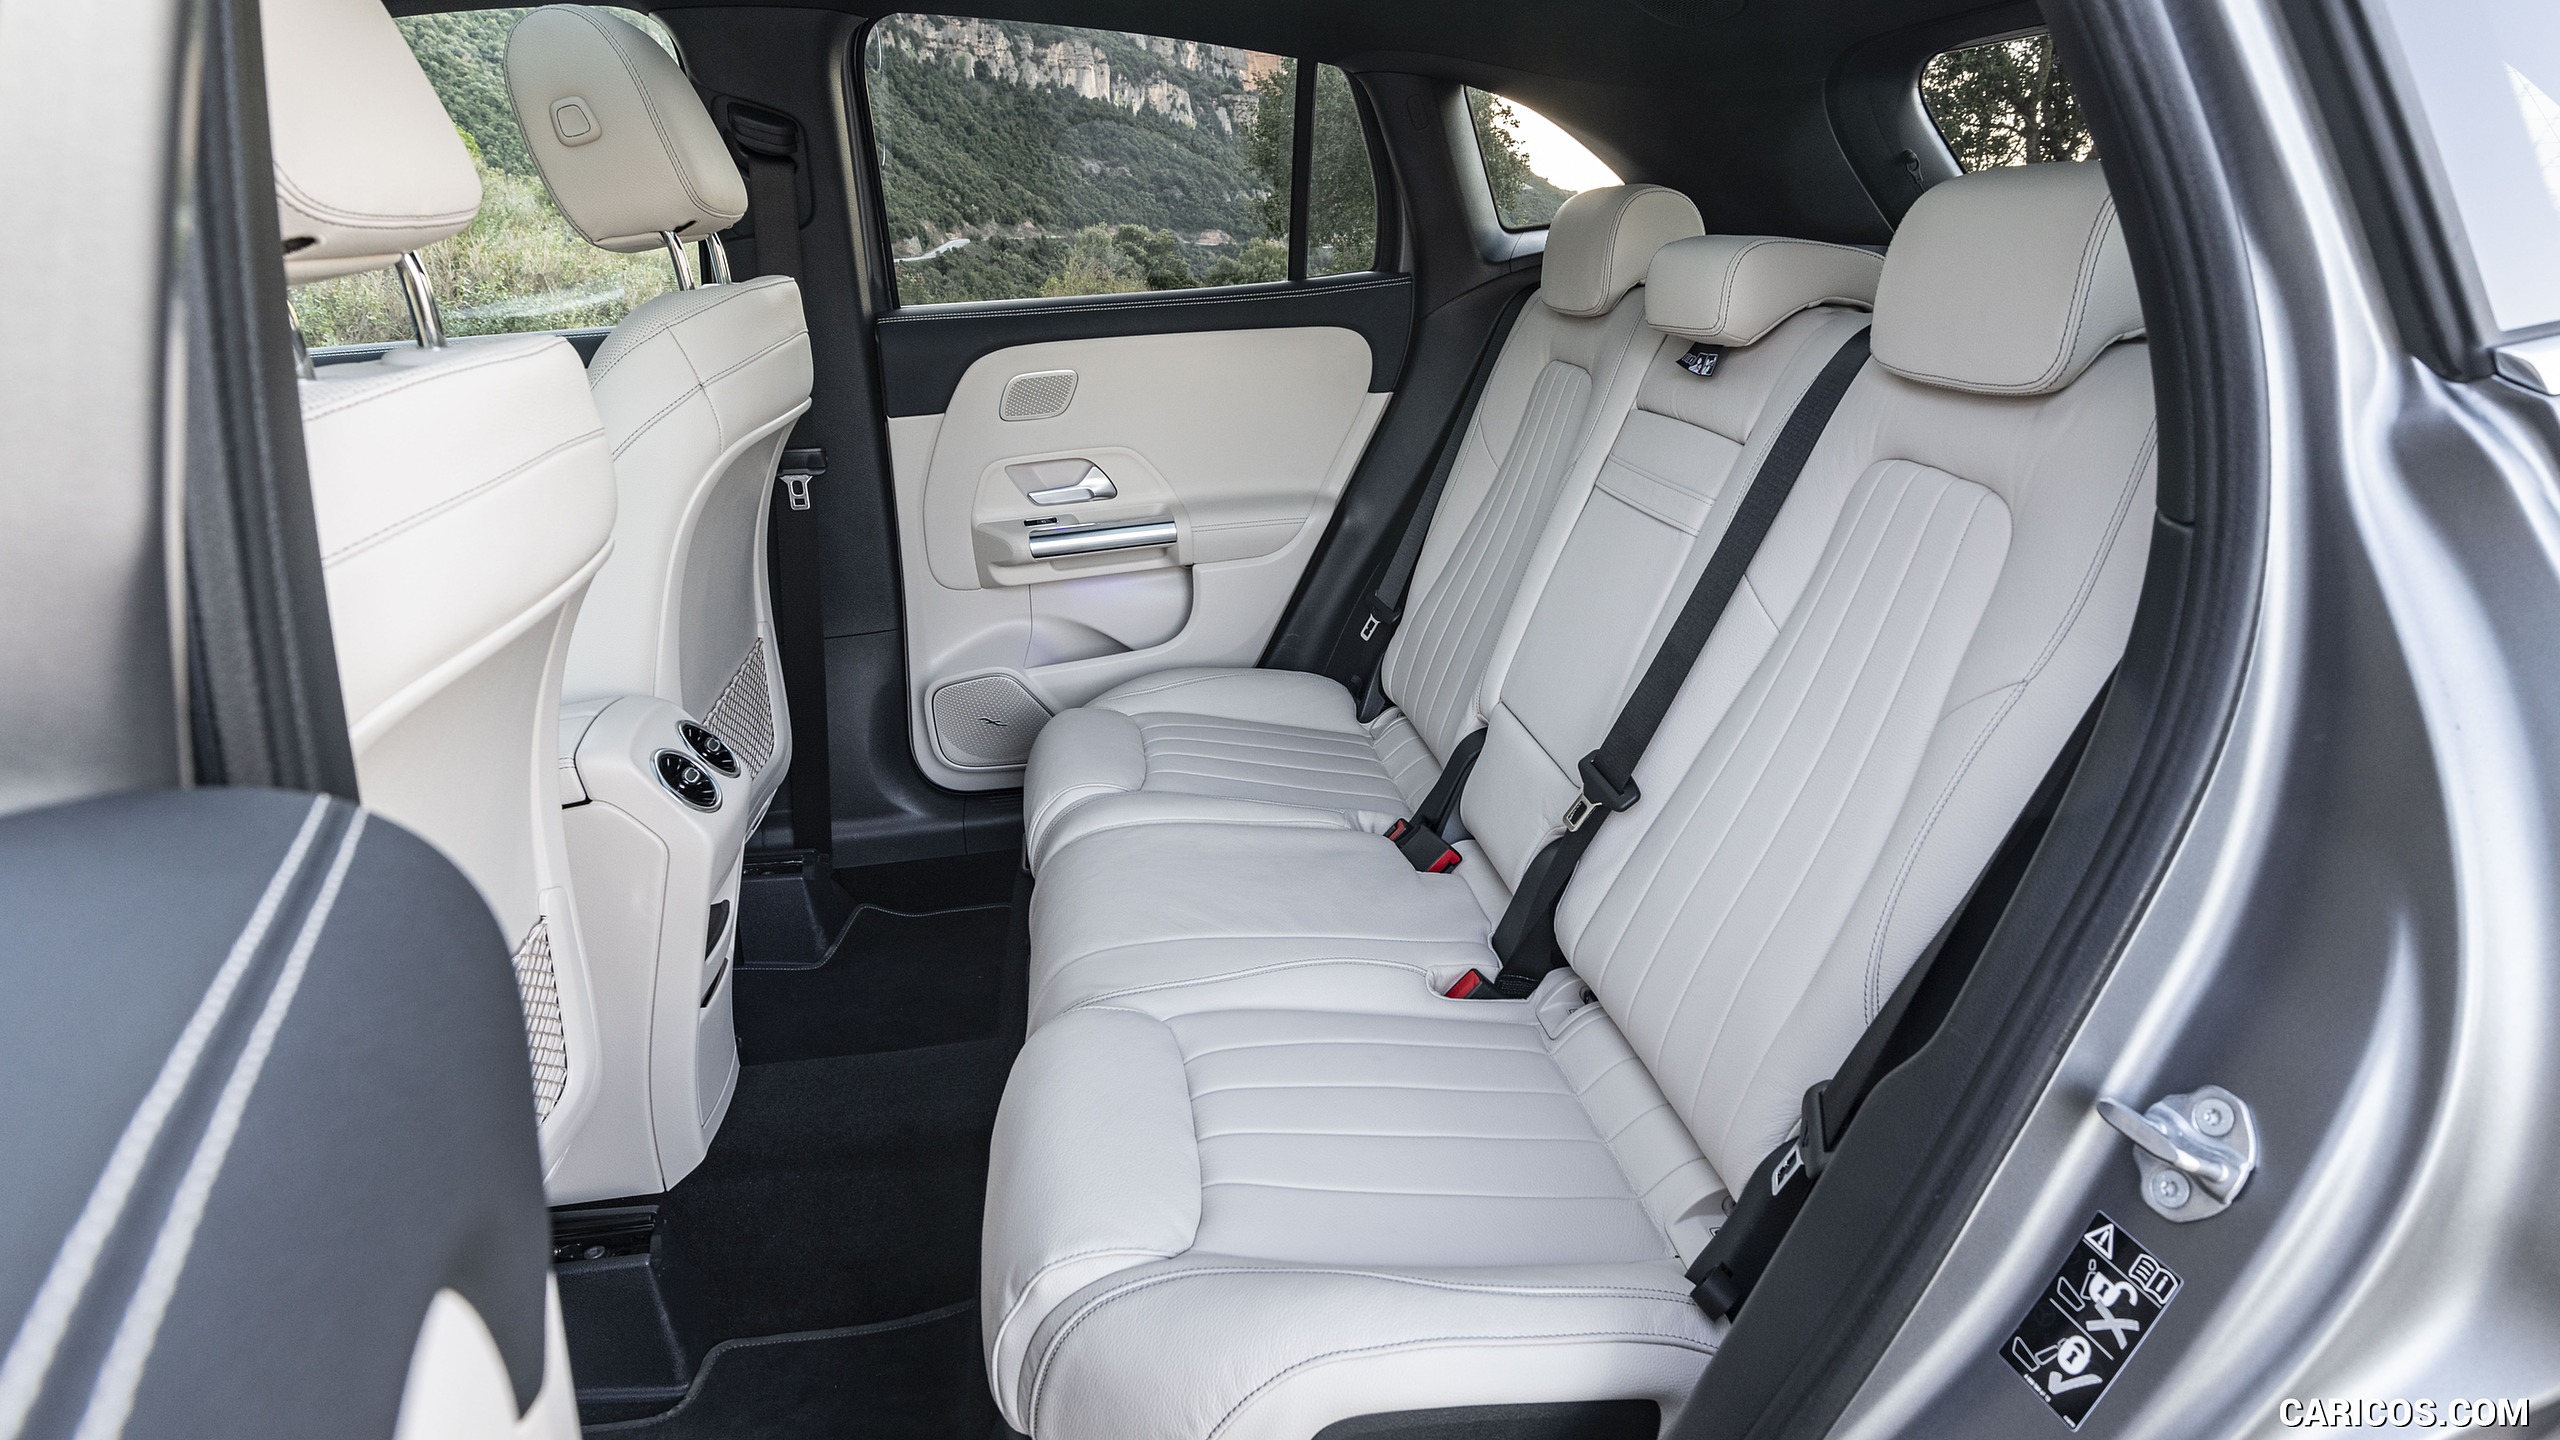 2021 Mercedes-Benz GLA - Interior, Rear Seats, #113 of 280